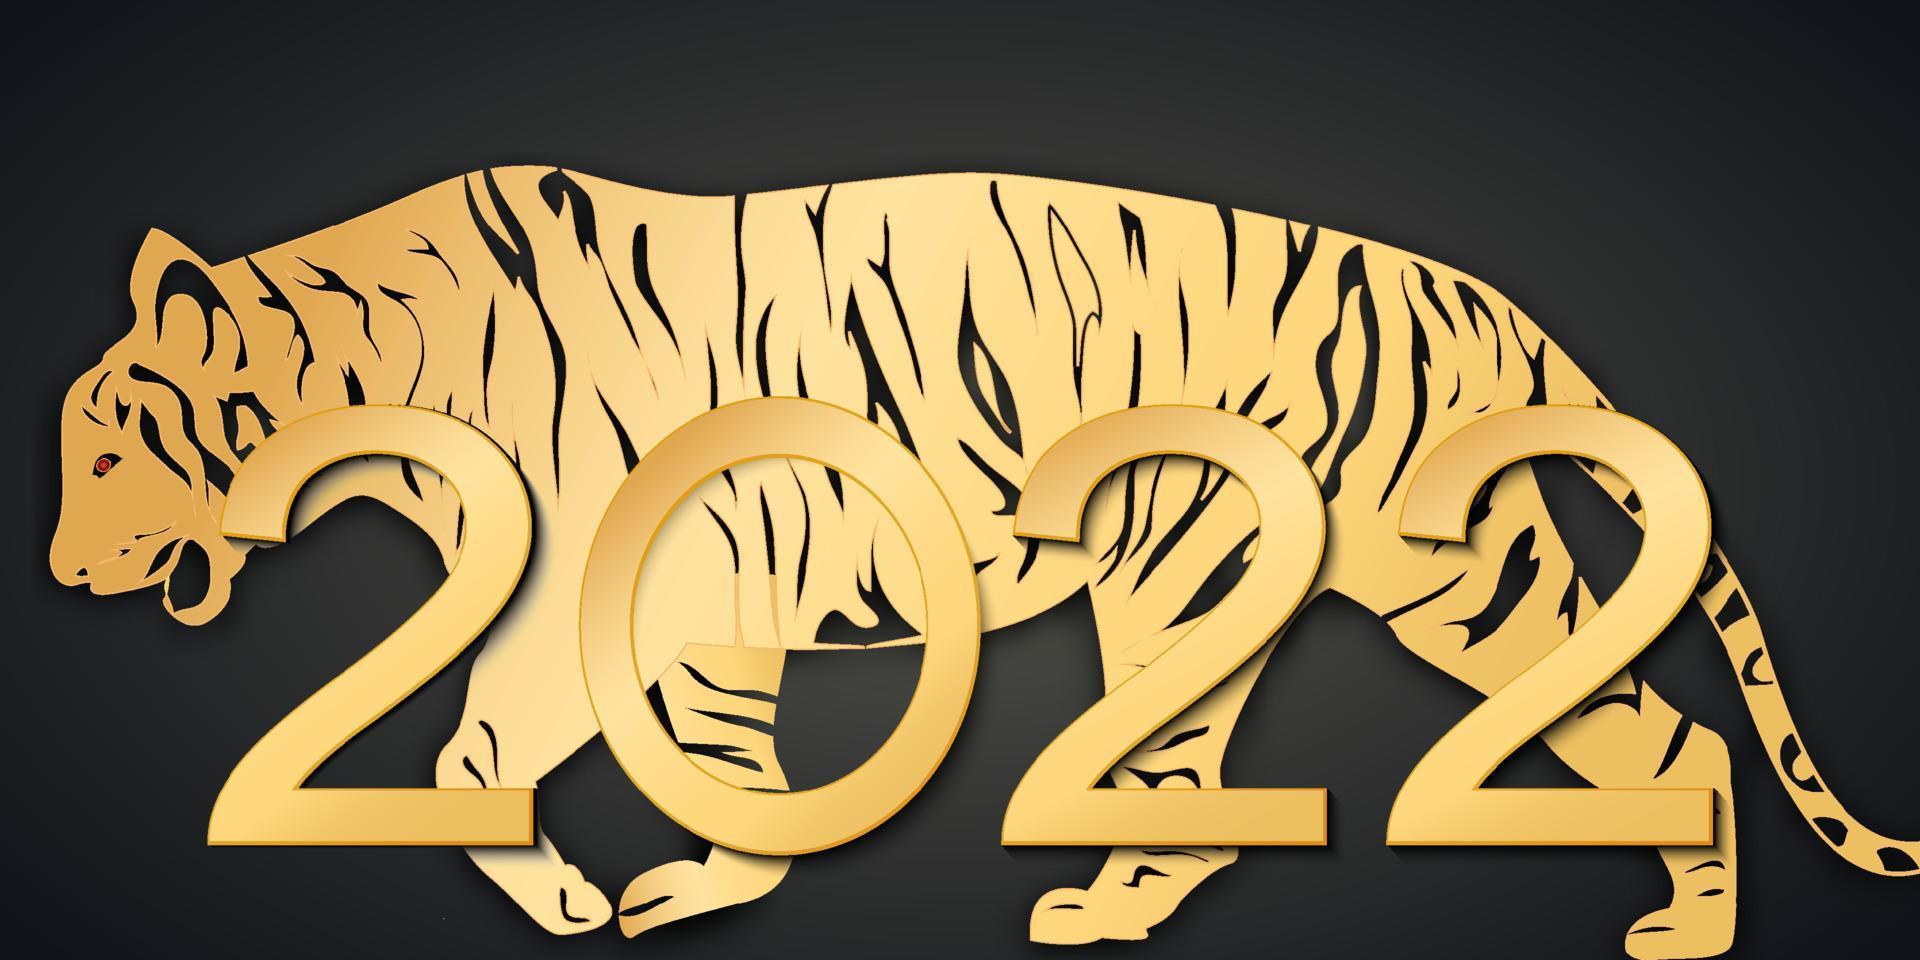 Illustrationen für das chinesische Neujahr 2022, Jahr des Tigers. mondneujahr 2022. chinesischer neujahrshintergrund, grußkarte vektor